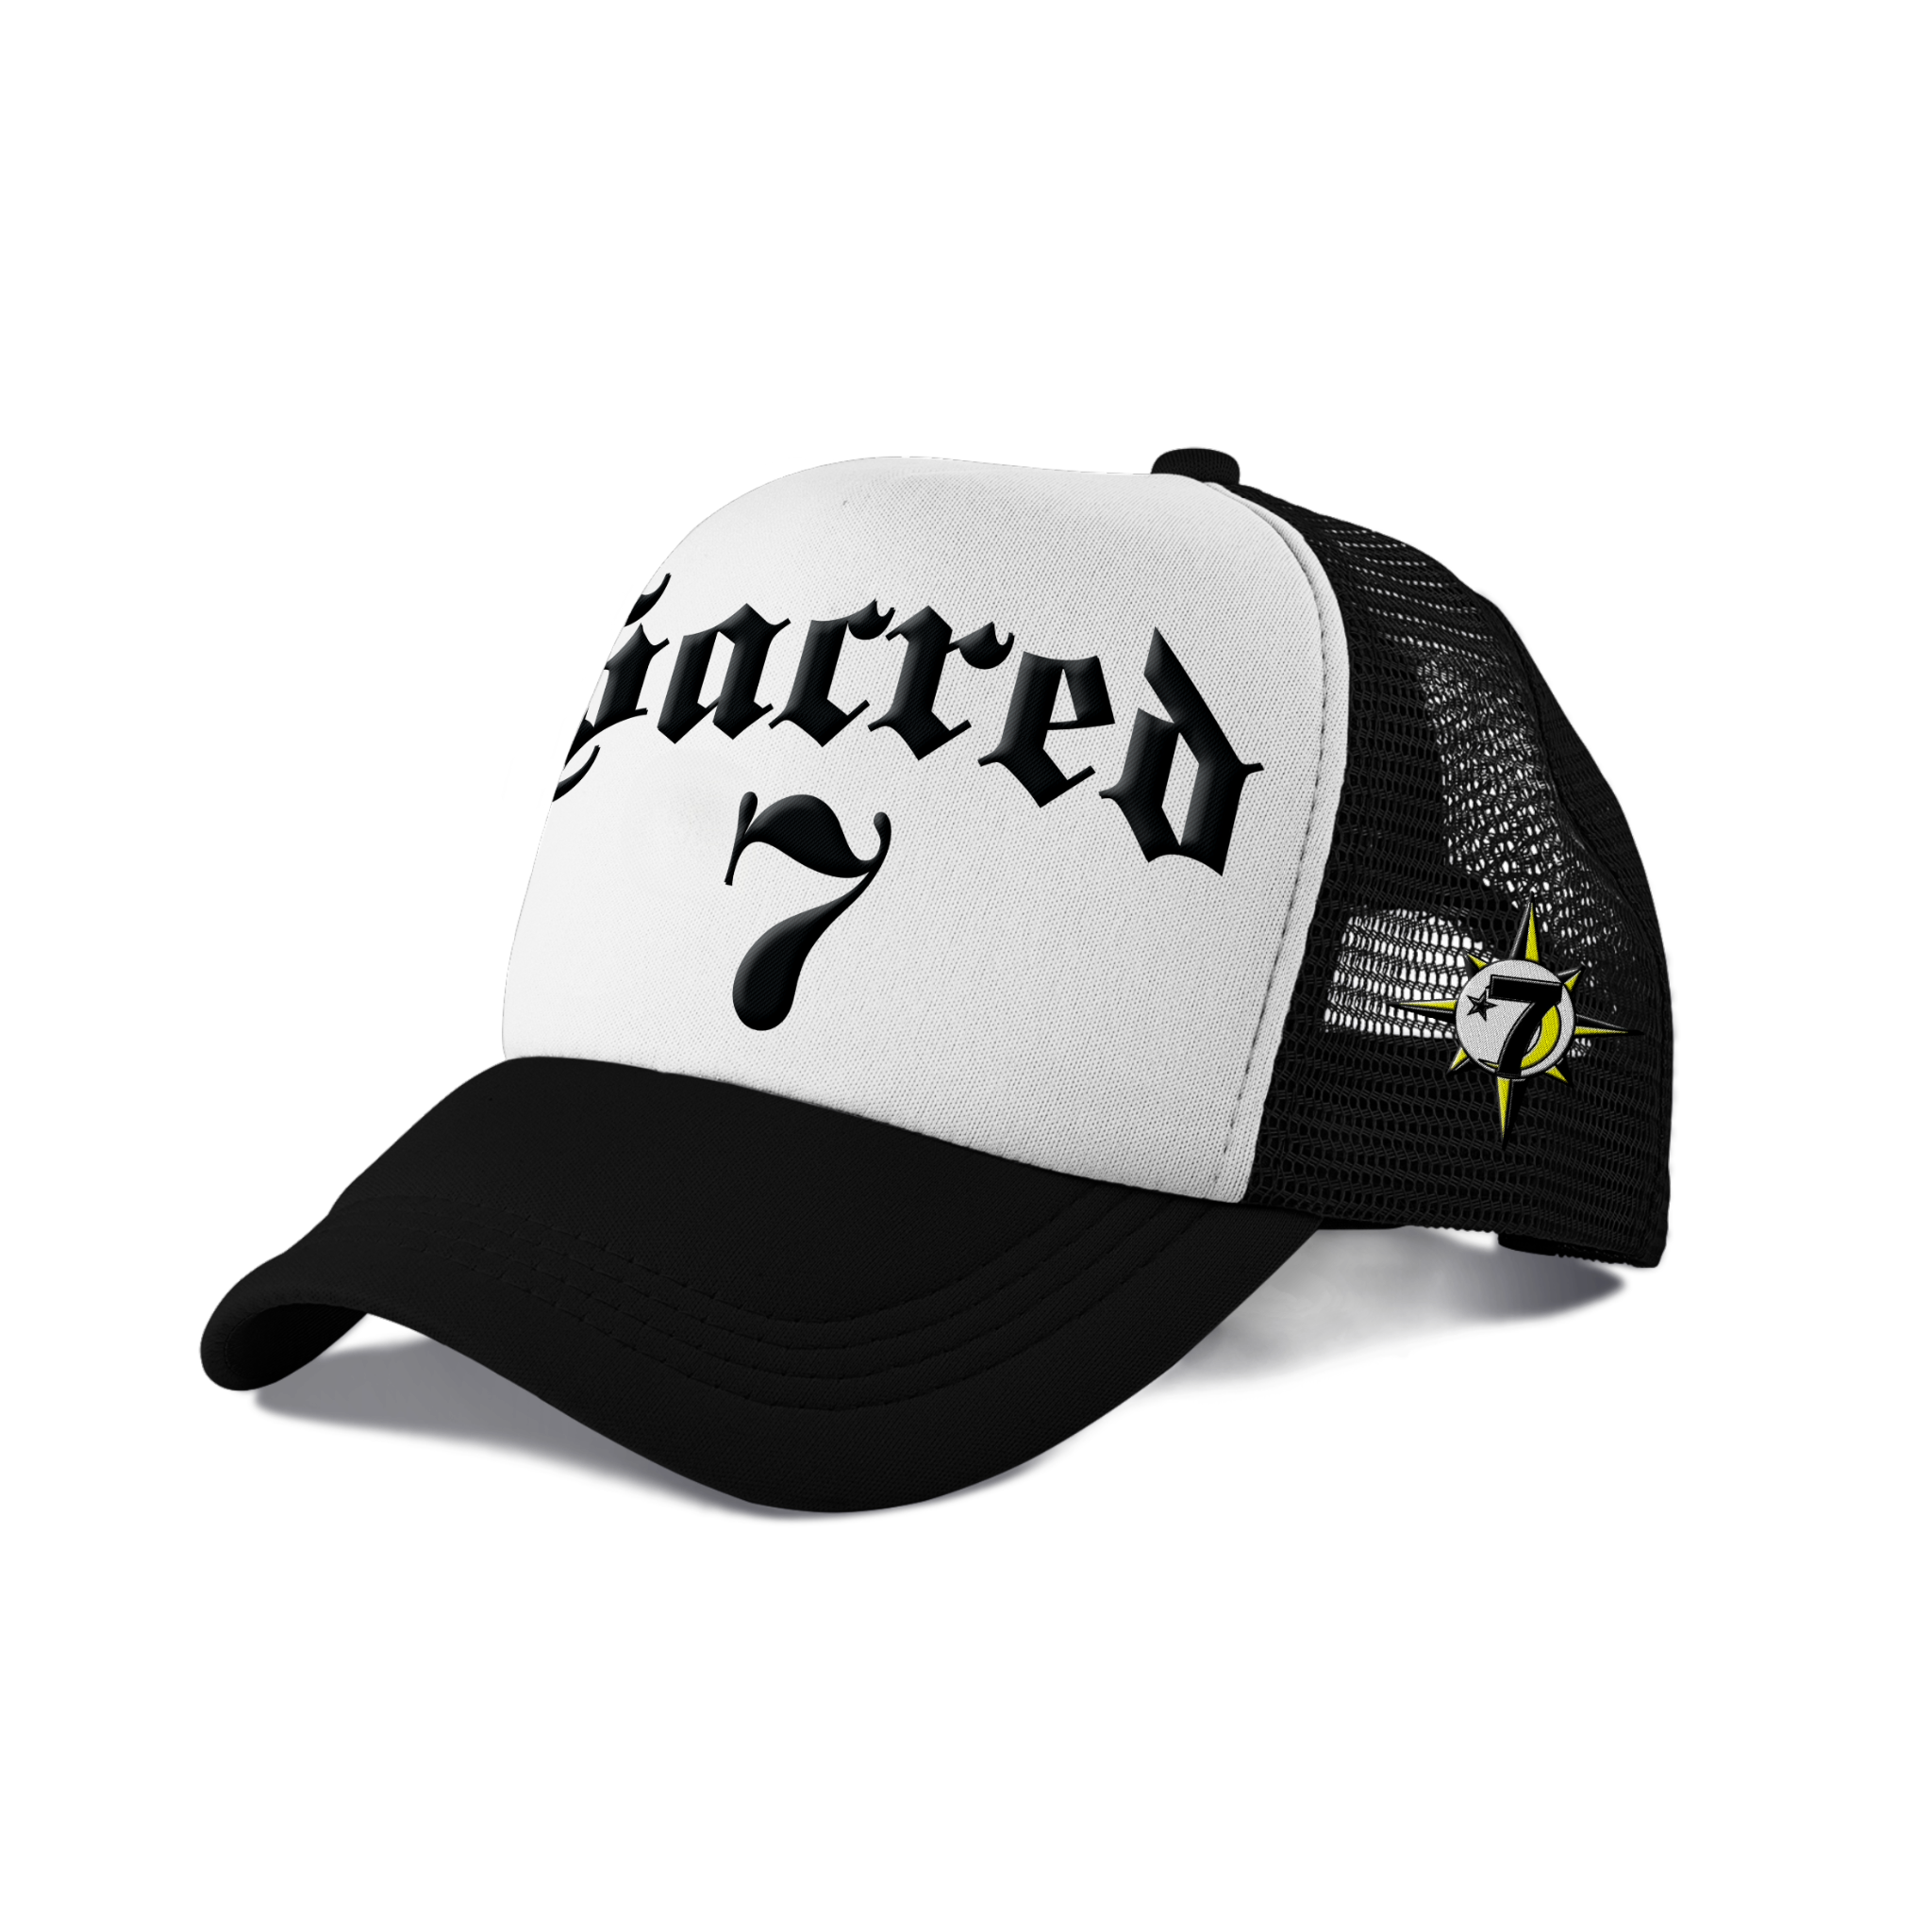 Sacred 7 Embroidered Trucker - Black & White W/ Black